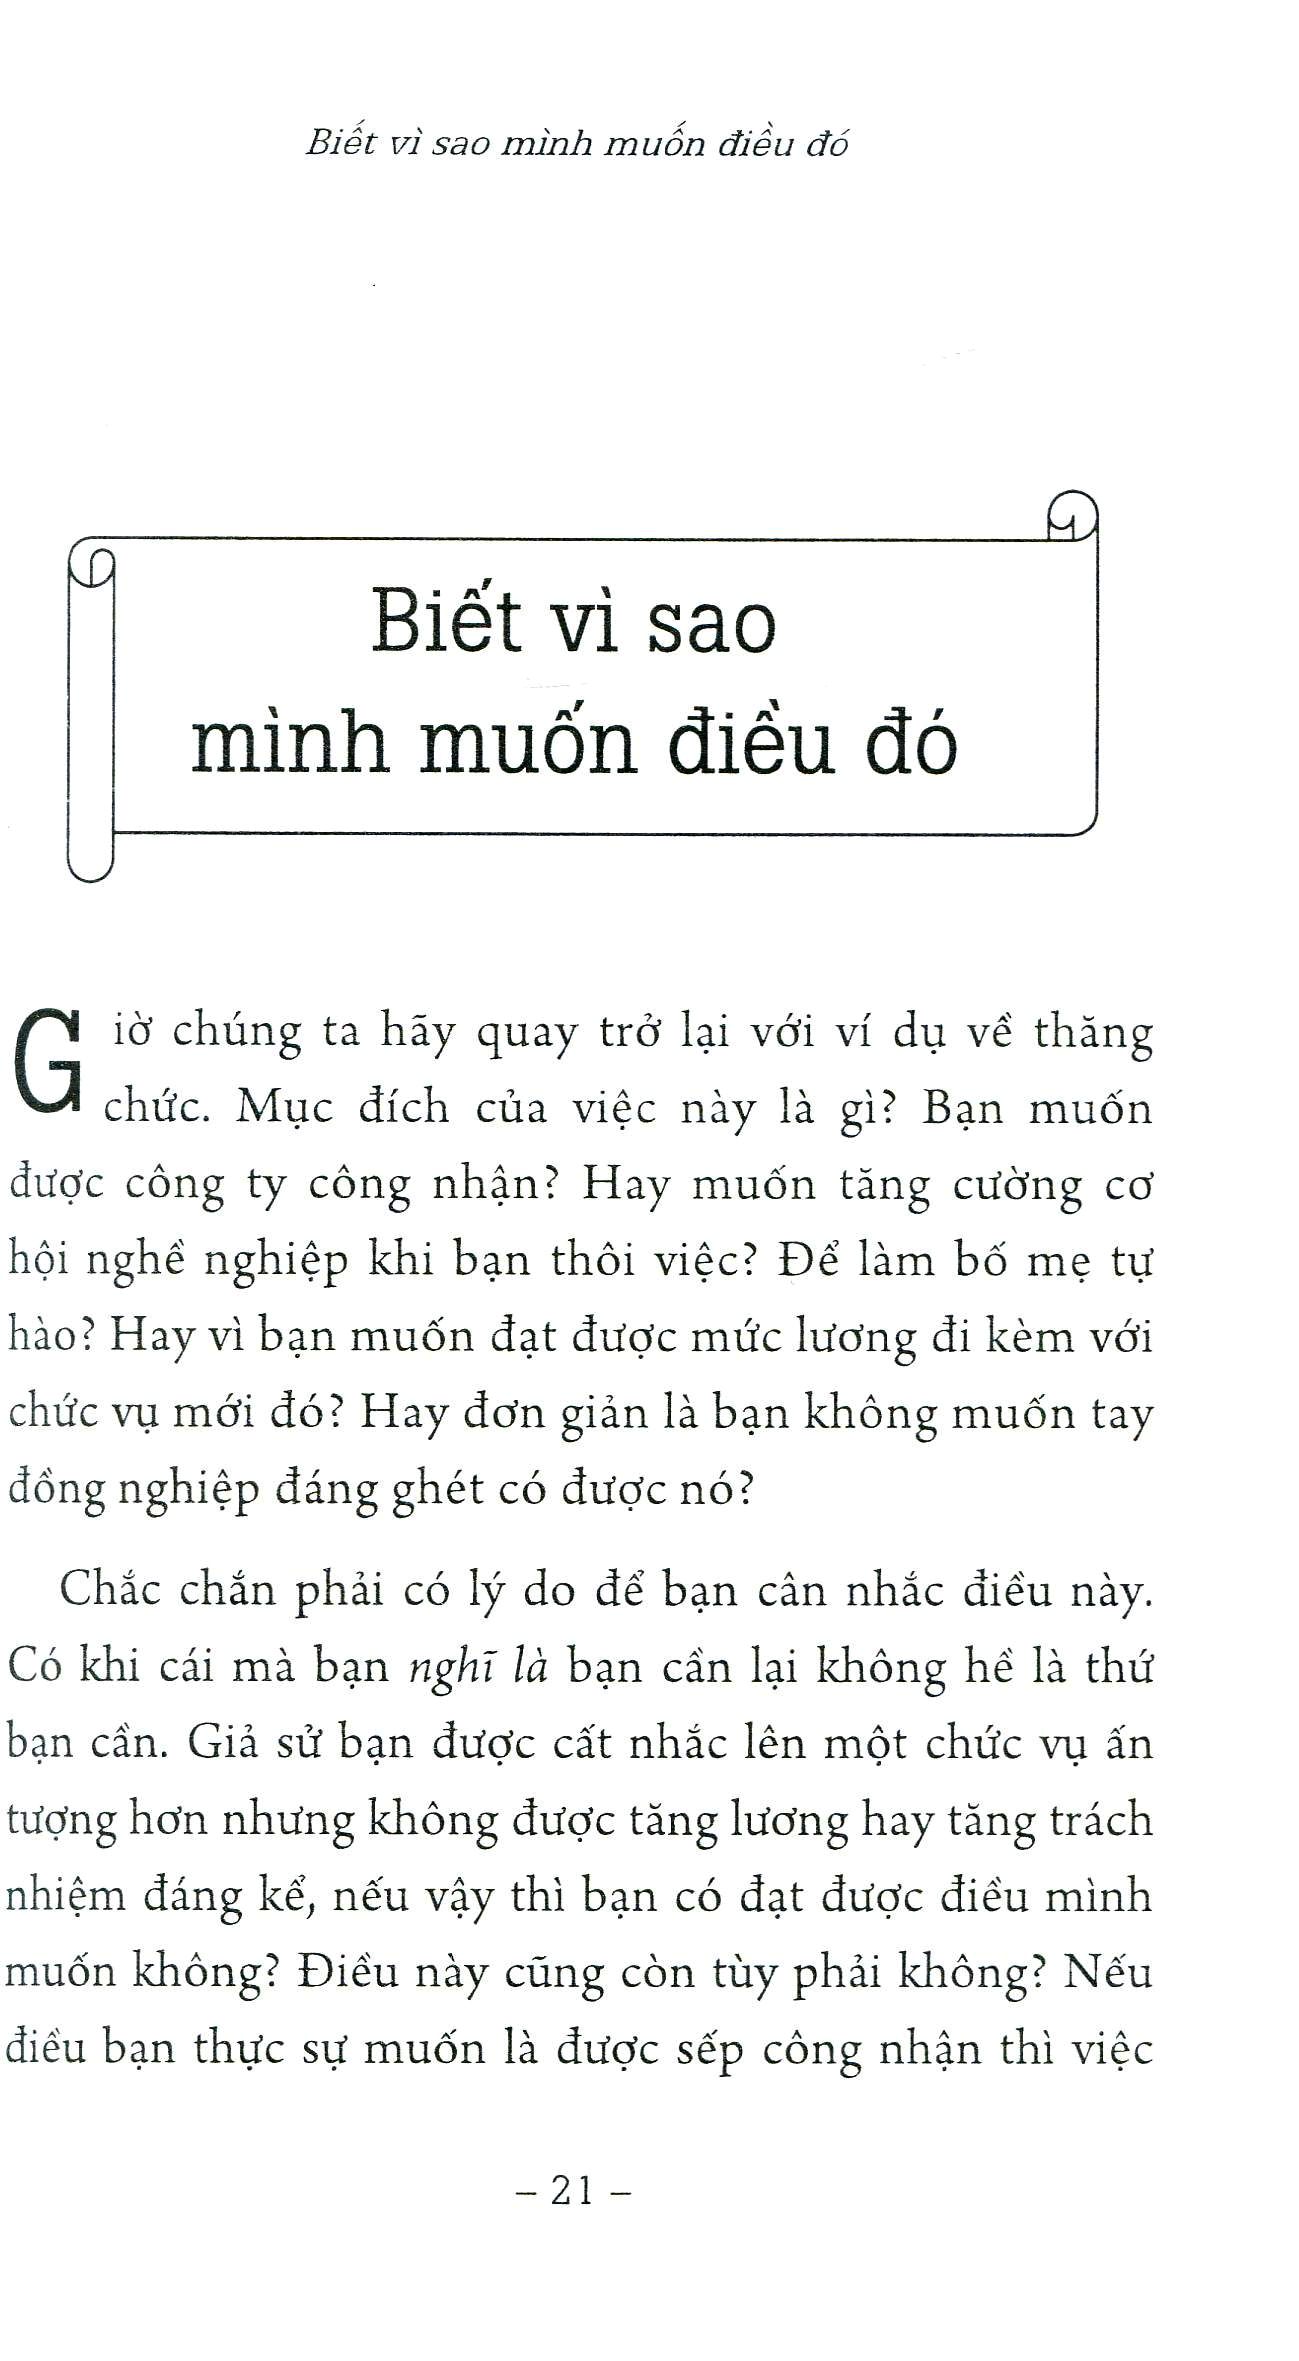 100 Bí Quyết Để Có Được Mọi Điều Bạn Muốn 2012 PDF